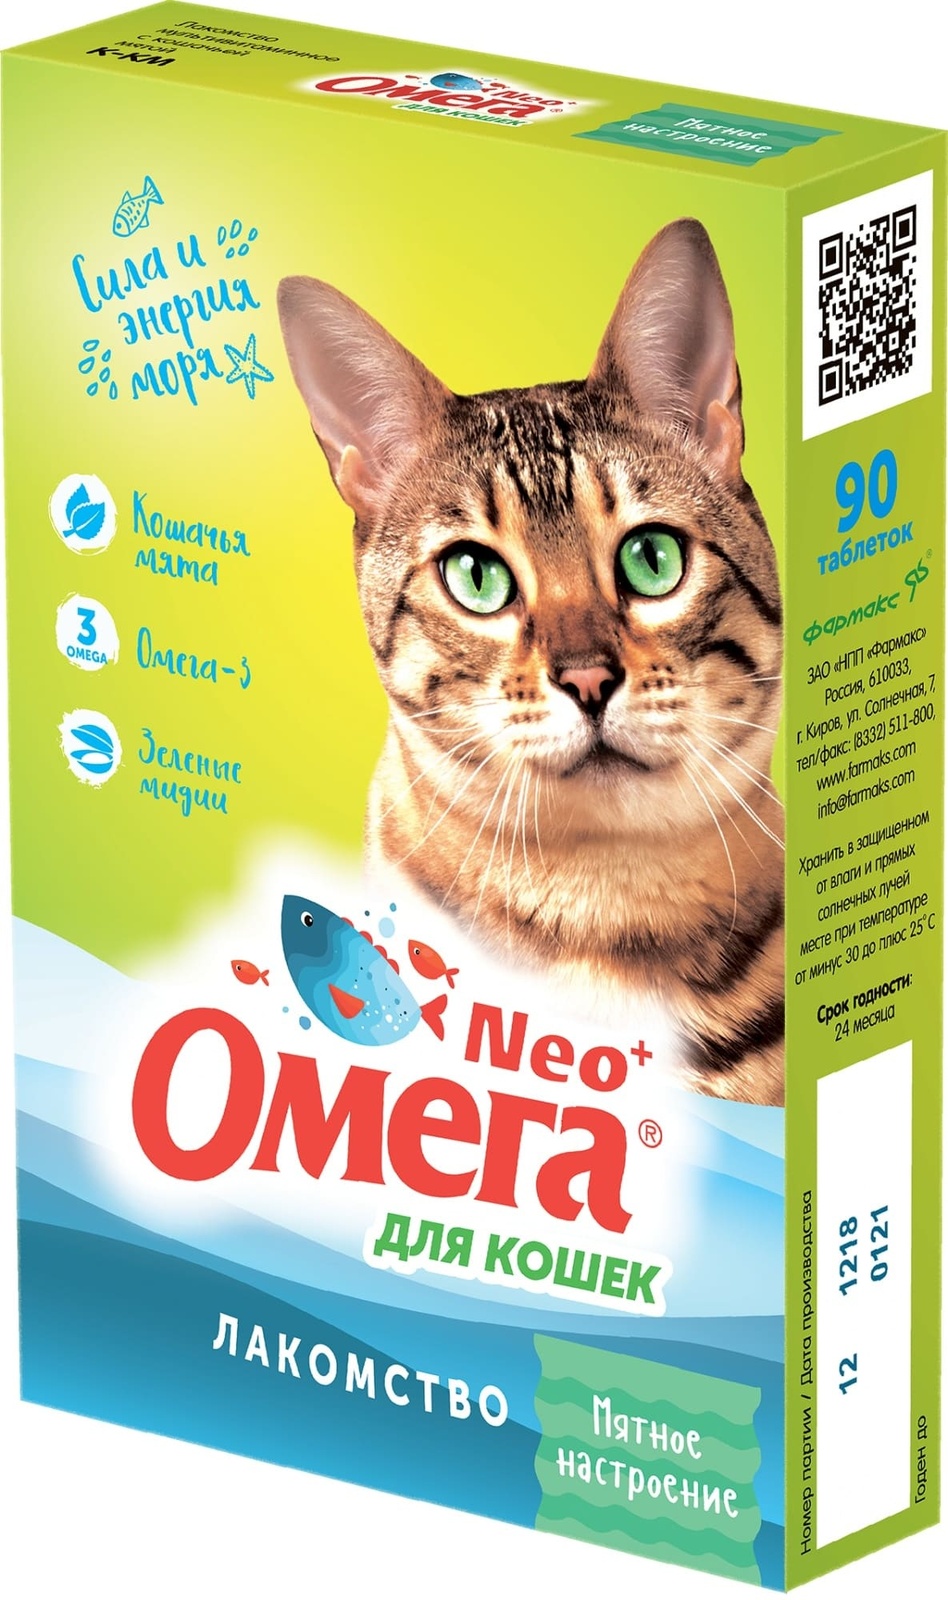 Фармакс Фармакс мультивитаминное лакомство Омега Neo+ Мятное настроение  с кошачьей мятой для кошек (60 г)